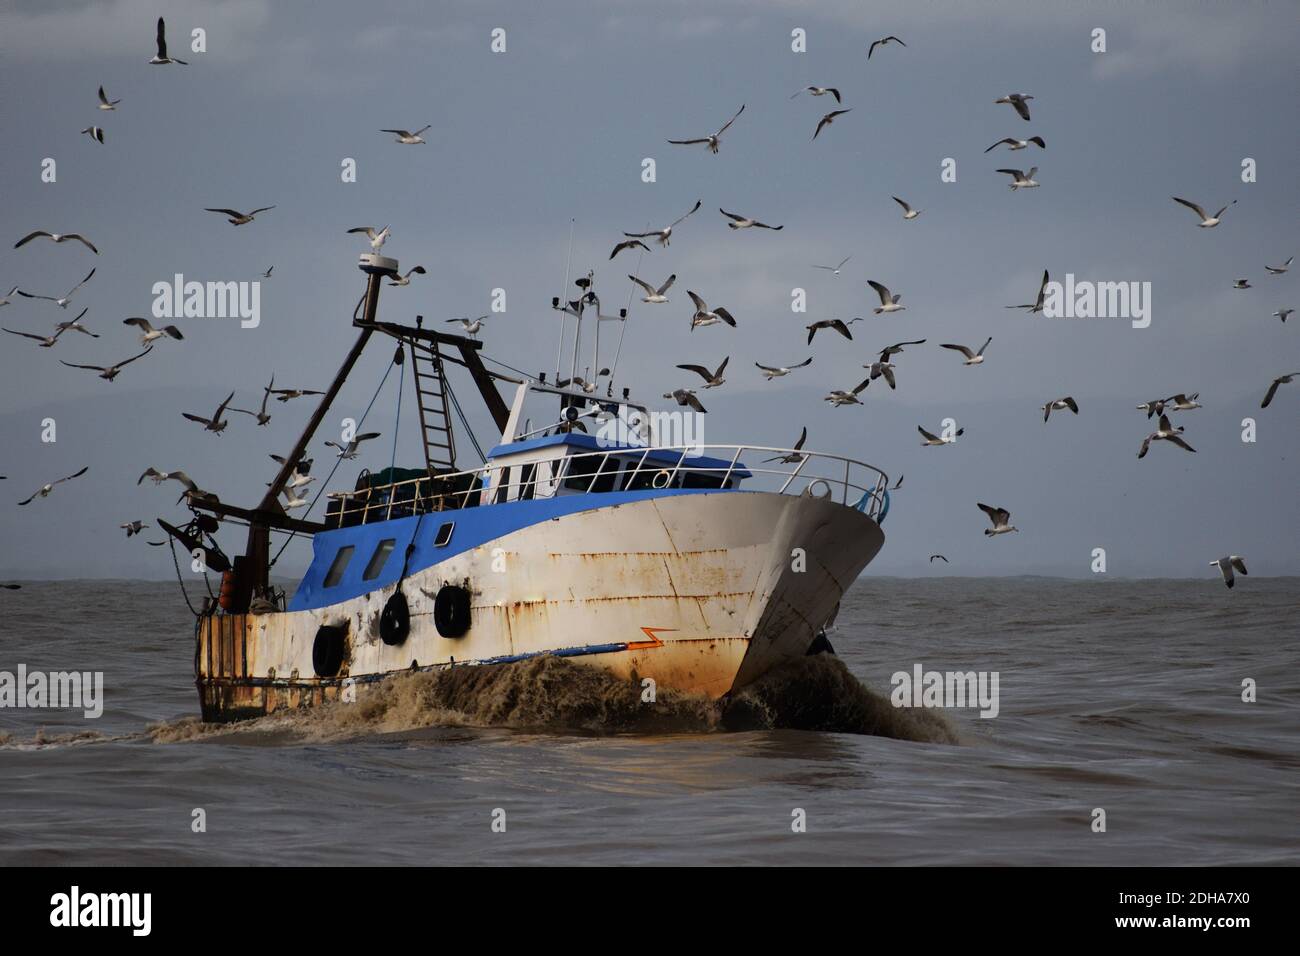 Ein Fischerboot aus dem Meer fährt in den Hafen von Fiumicino, Italien. Schwärme von Möwen streben nach Fischen. Schlammiges Wasser. Stockfoto